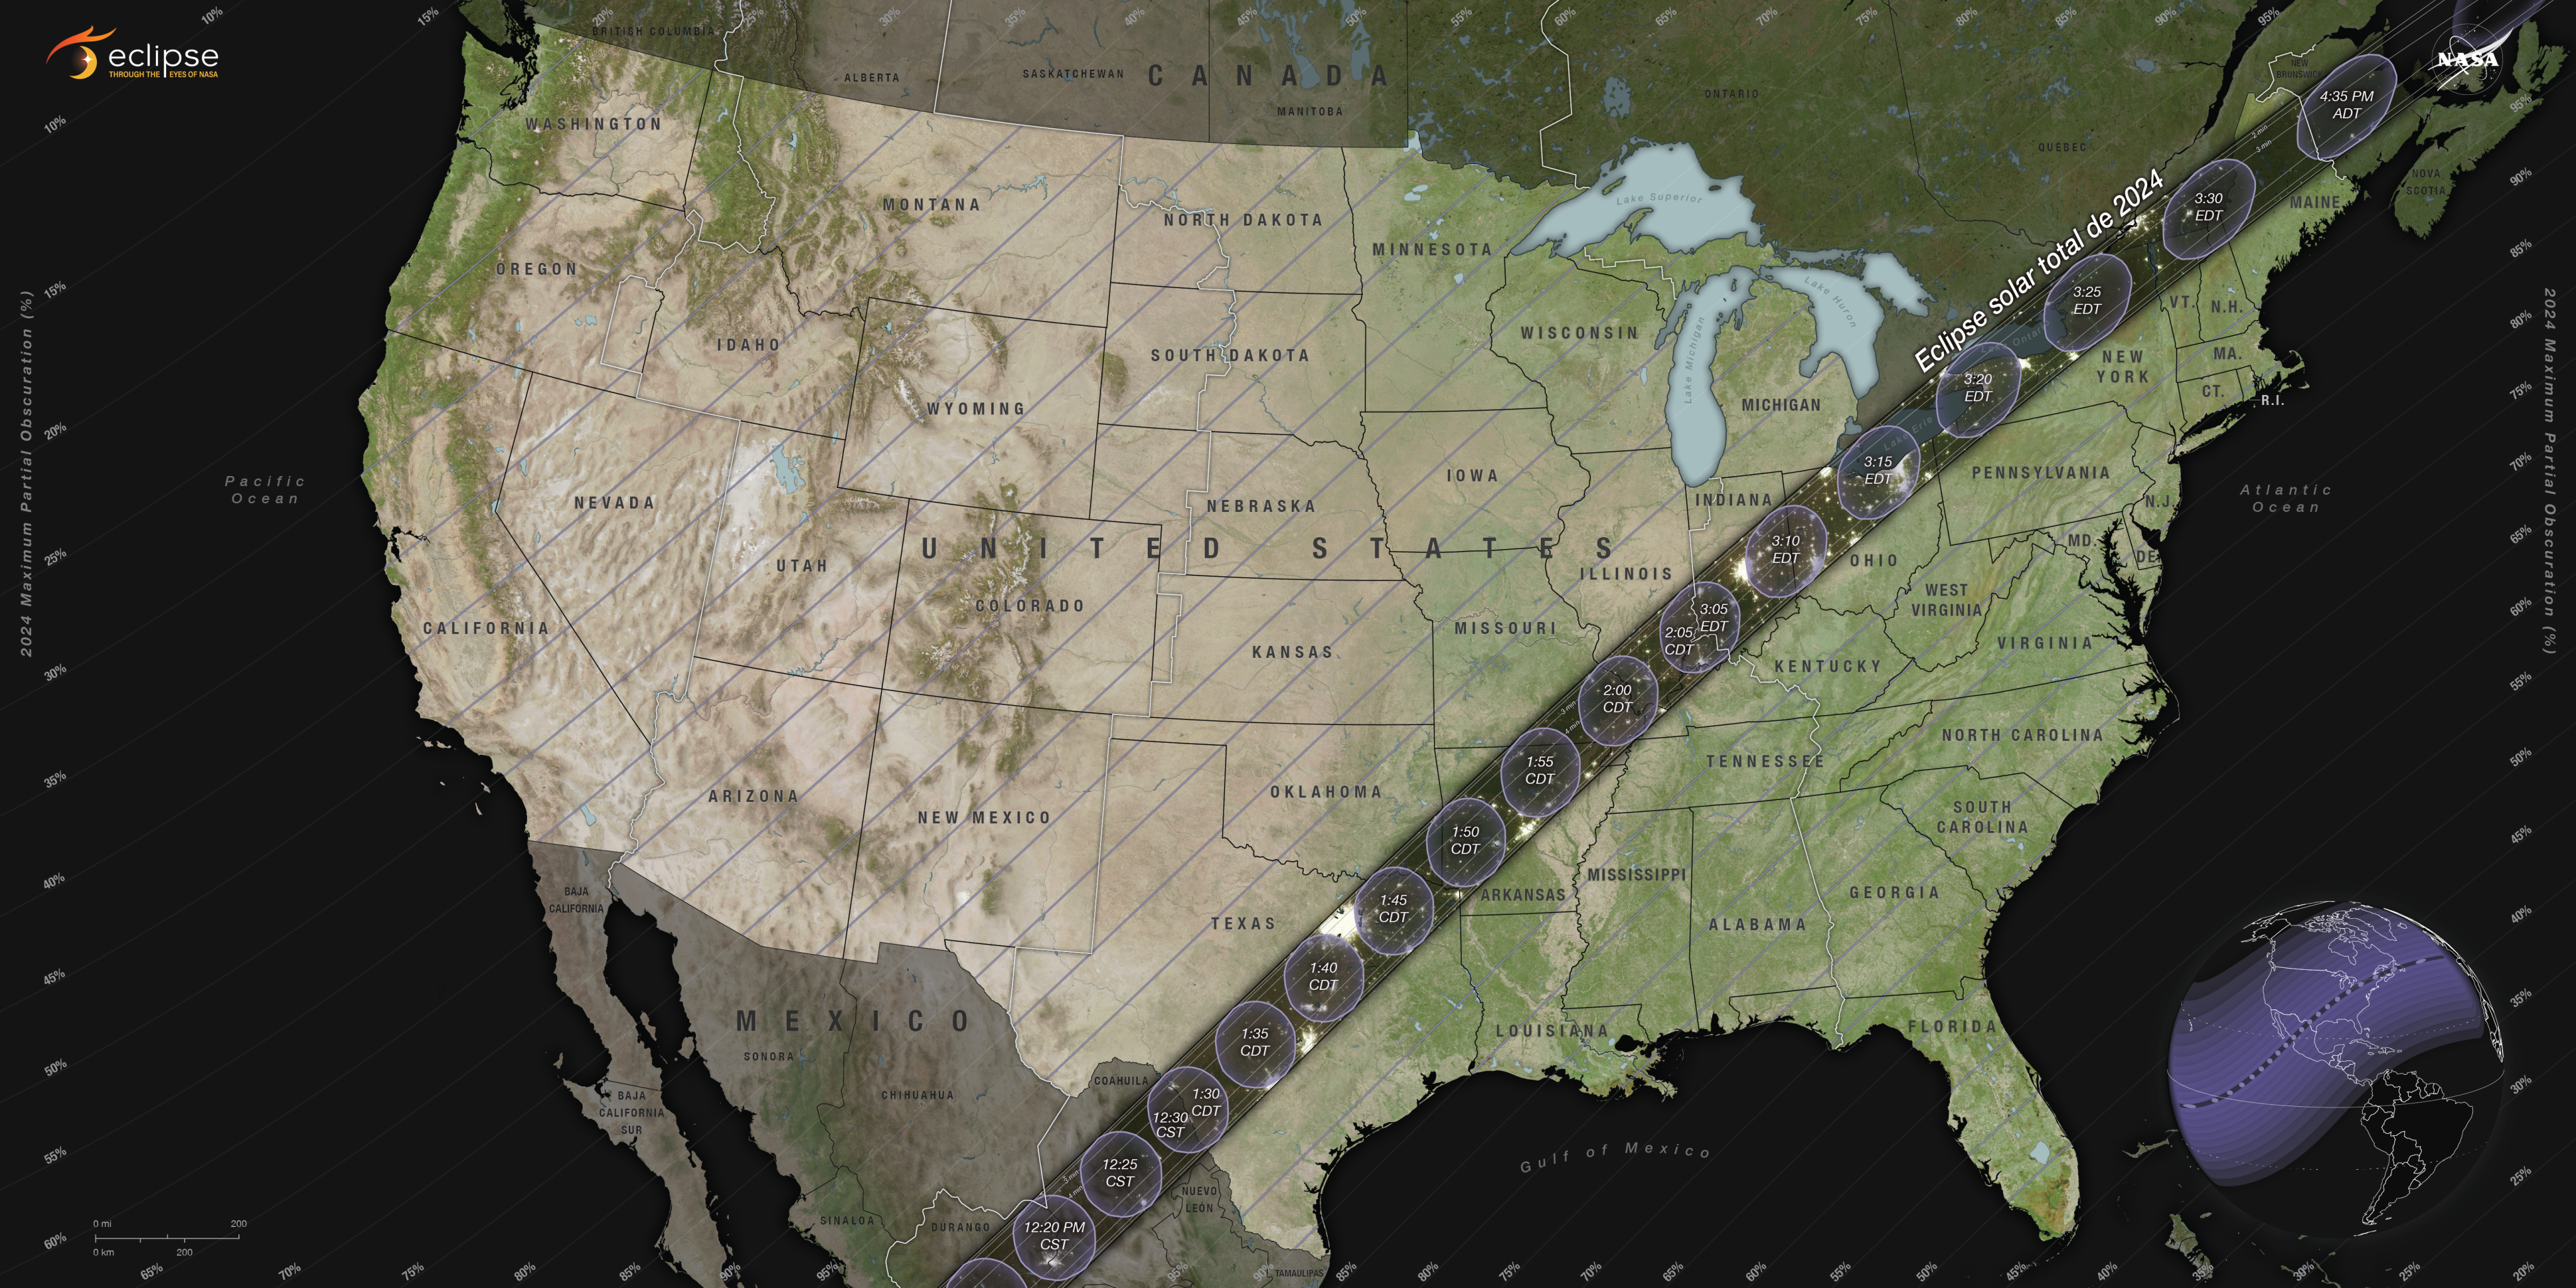 La trayectoria del eclipse solar total atraviesa México, pasa por Estados Unidos desde Texas hasta Maine y llega hasta Canadá.